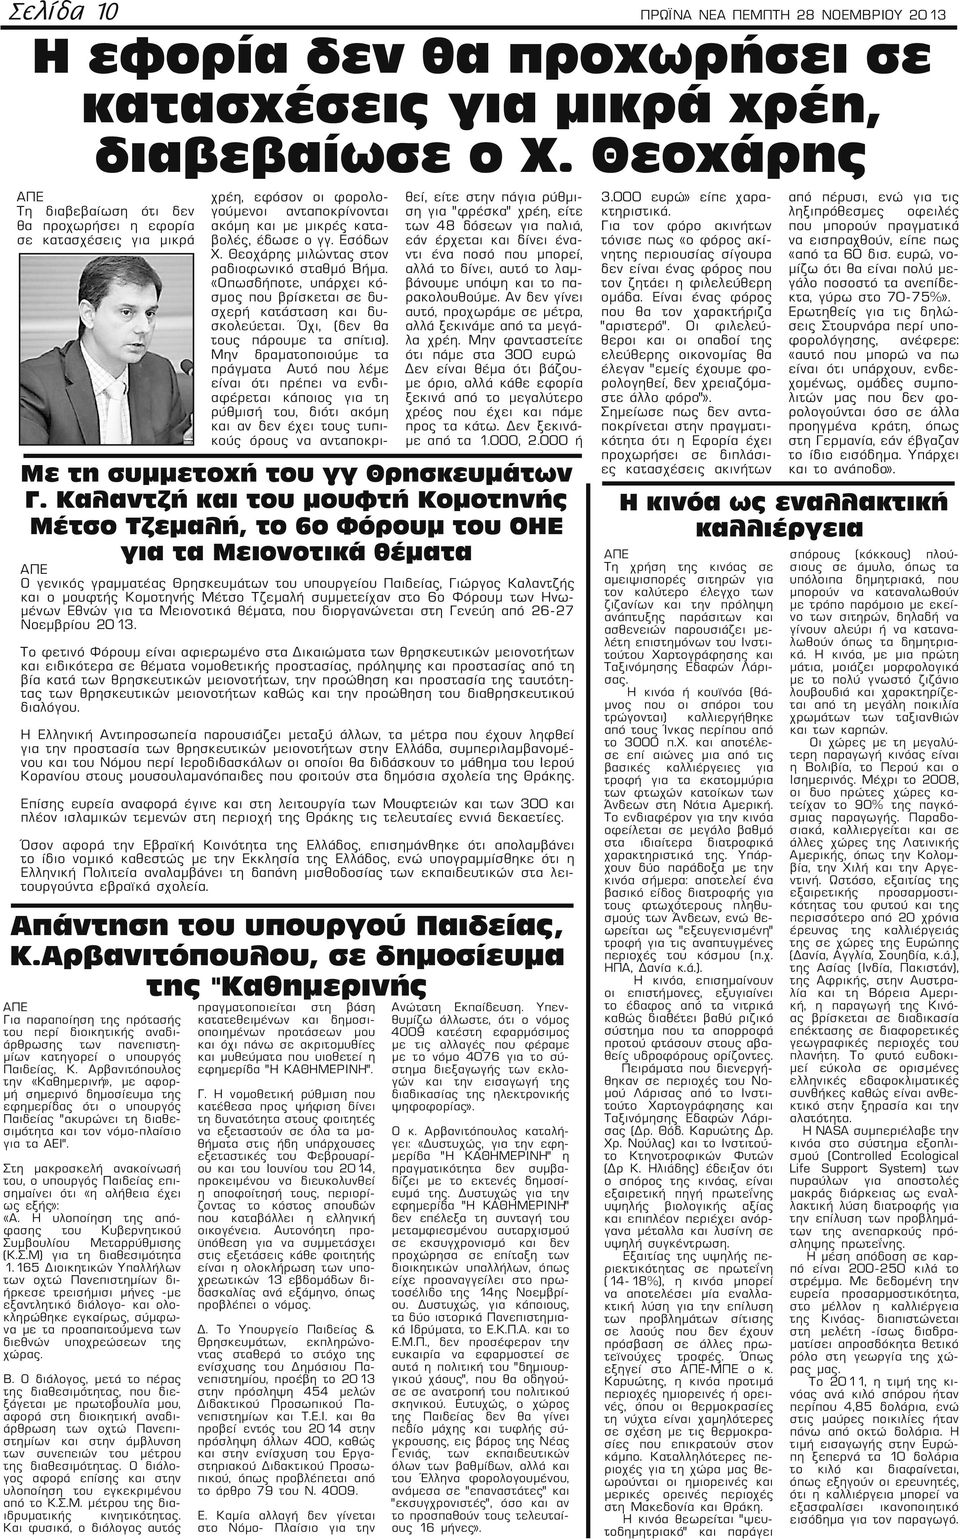 Αρβανιτόπουλος την «Καθημερινή», με αφορμή σημερινό δημοσίευμα της εφημερίδας ότι ο υπουργός Παιδείας "ακυρώνει τη διαθεσιμότητα και τον νόμο-πλαίσιο για τα ΑΕΙ".